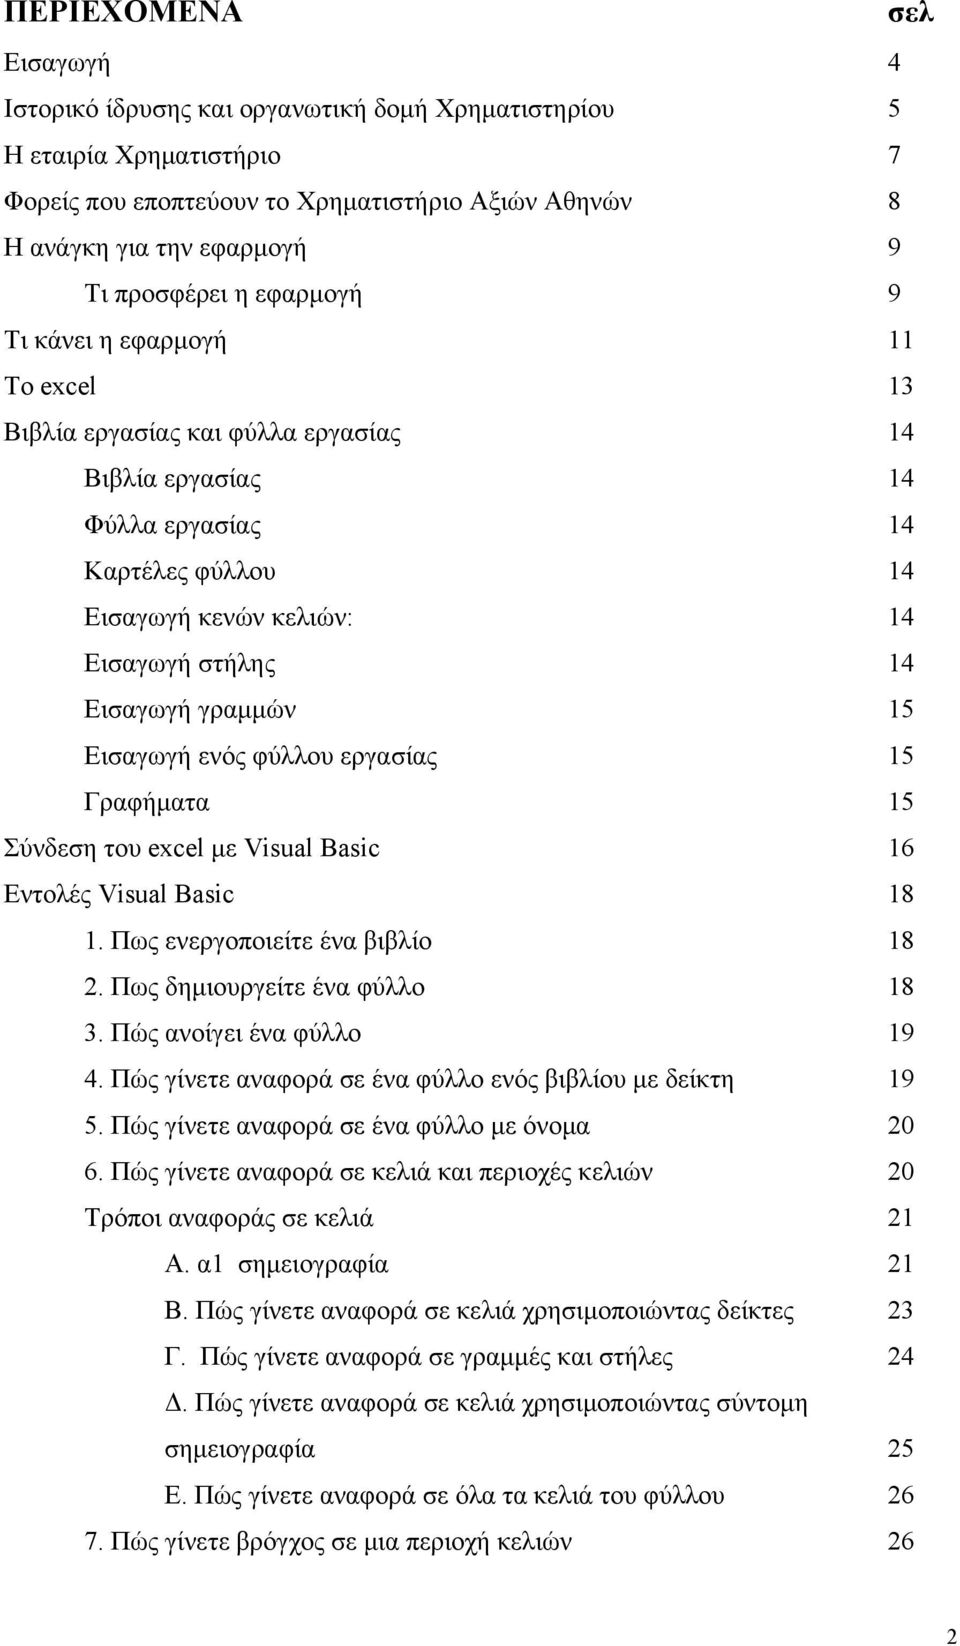 Εισαγωγή γραμμών 15 Εισαγωγή ενός φύλλου εργασίας 15 Γραφήματα 15 Σύνδεση του excel με Visual Basic 16 Εντολές Visual Basic 18 1. Πως ενεργοποιείτε ένα βιβλίο 18 2. Πως δημιουργείτε ένα φύλλο 18 3.